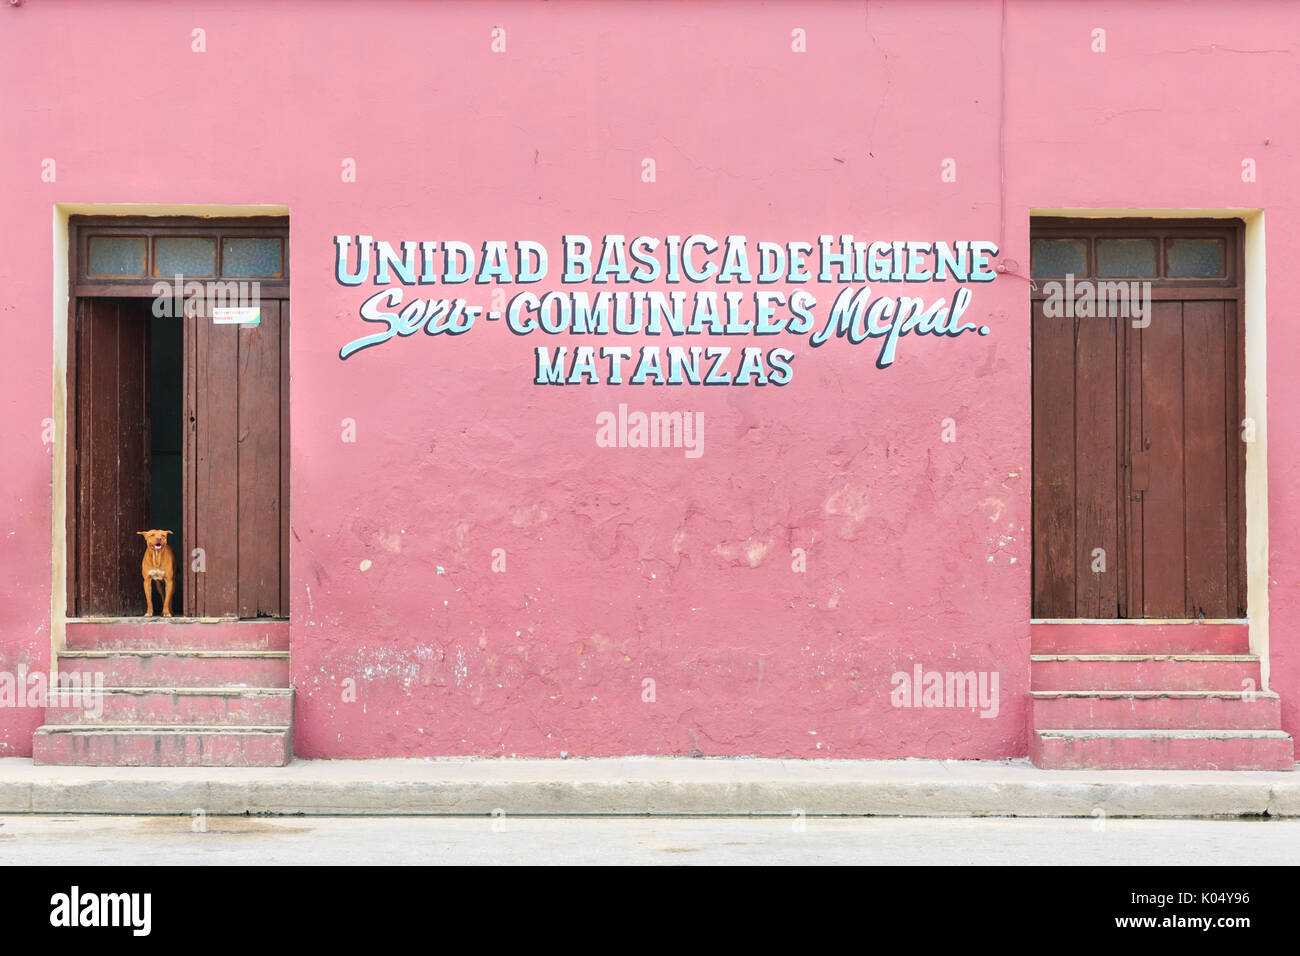 Cubano scena di strada, cani guardare fuori della porta, Istituto di Igiene Matanzas, Cuba Foto Stock